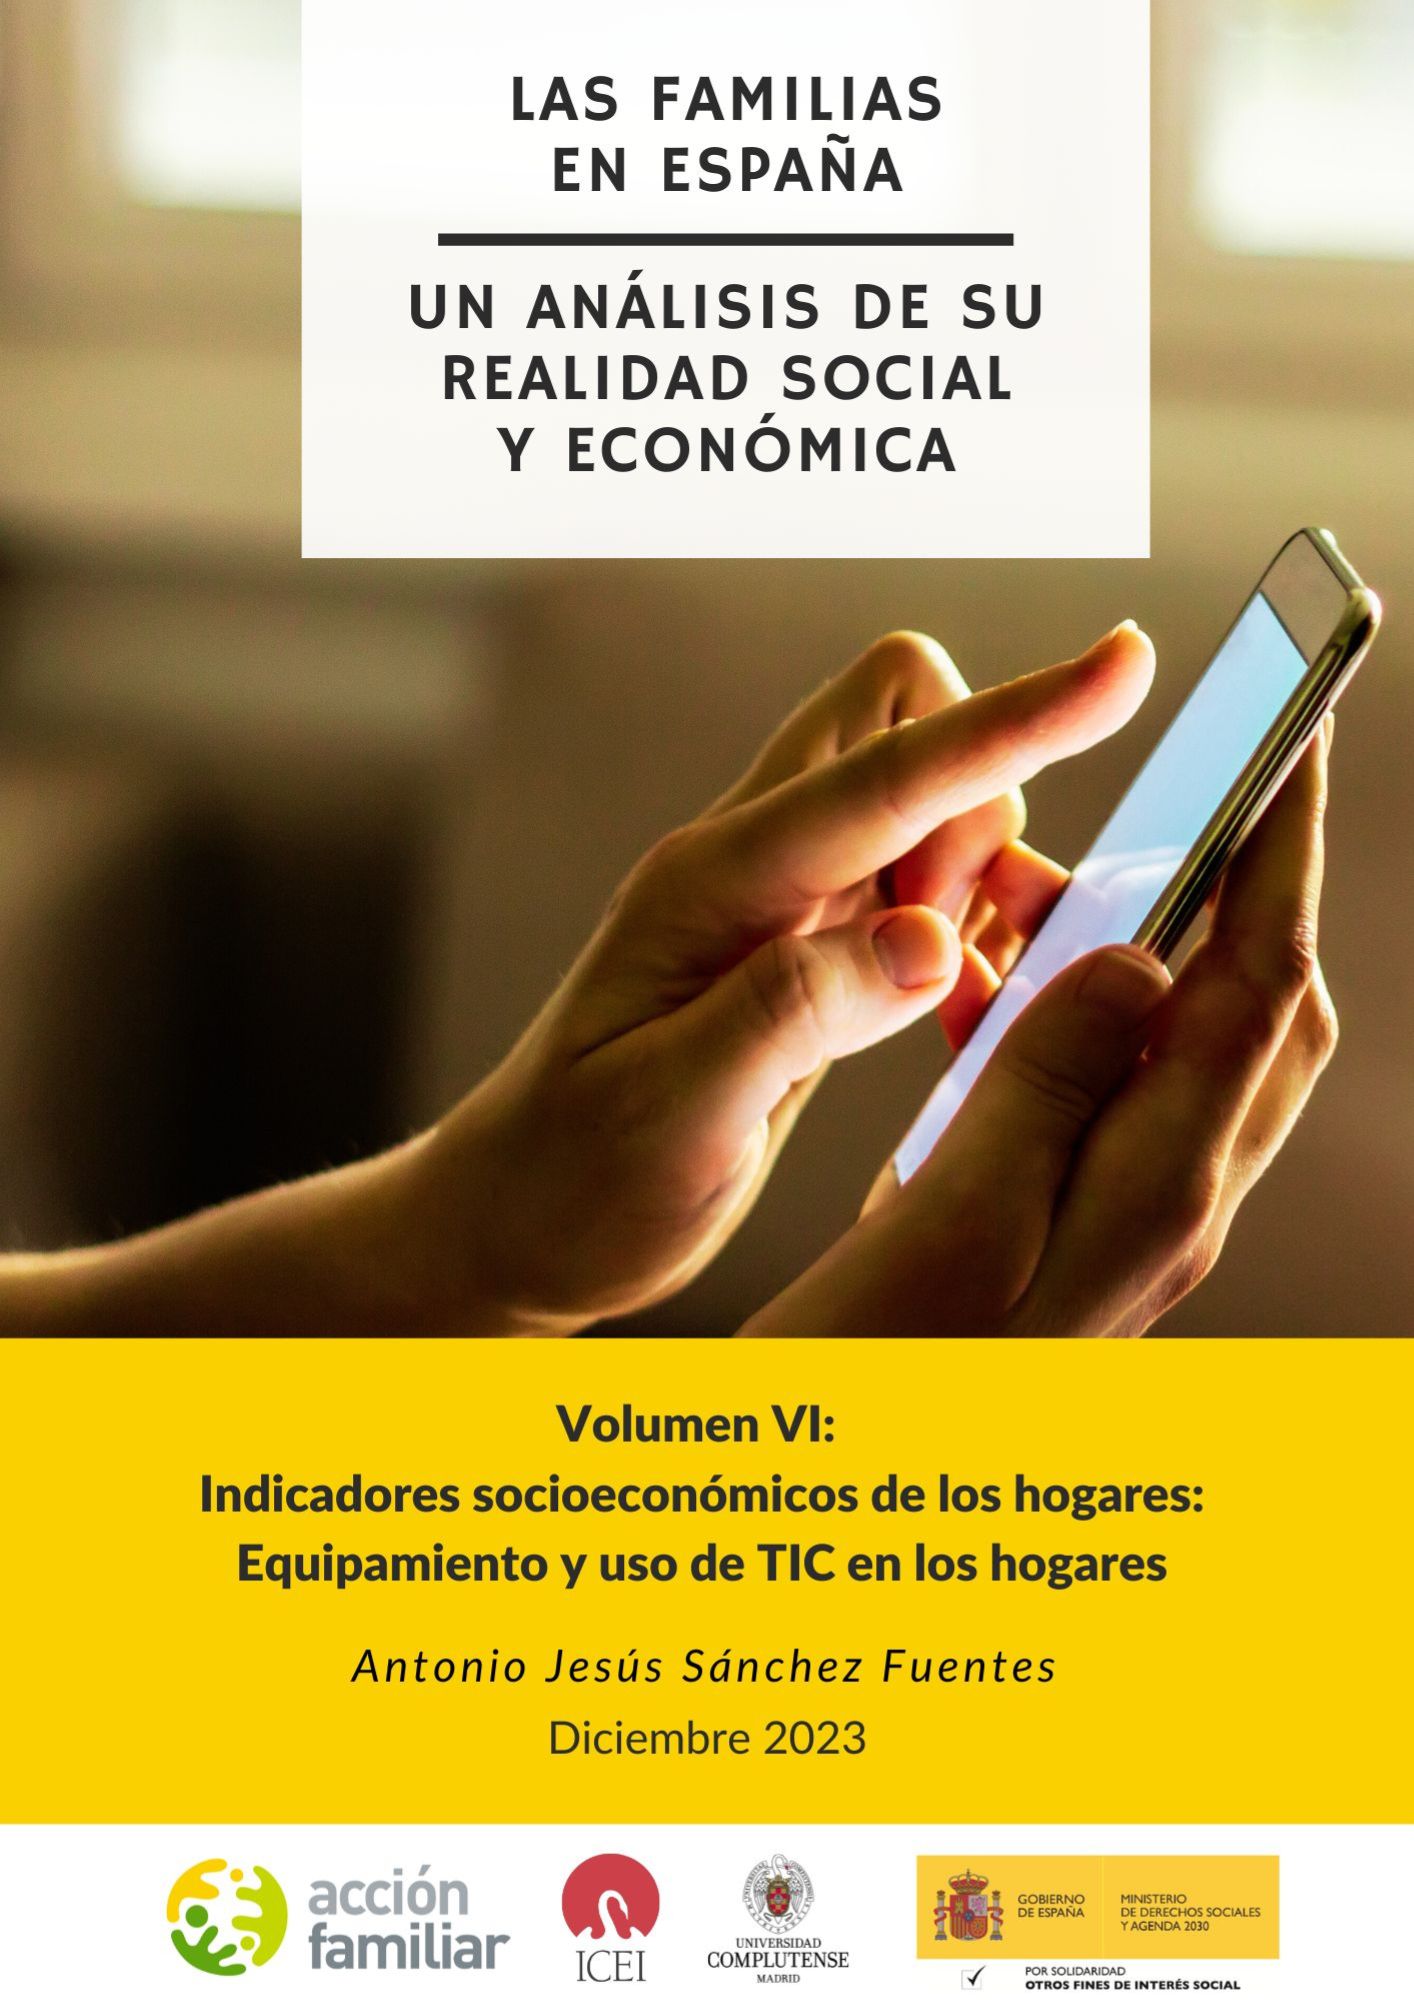 Observatorio de familia. Volumen VI: Indicadores socioeconómicos de los hogares: Equipamiento y uso de TIC en los hogares.